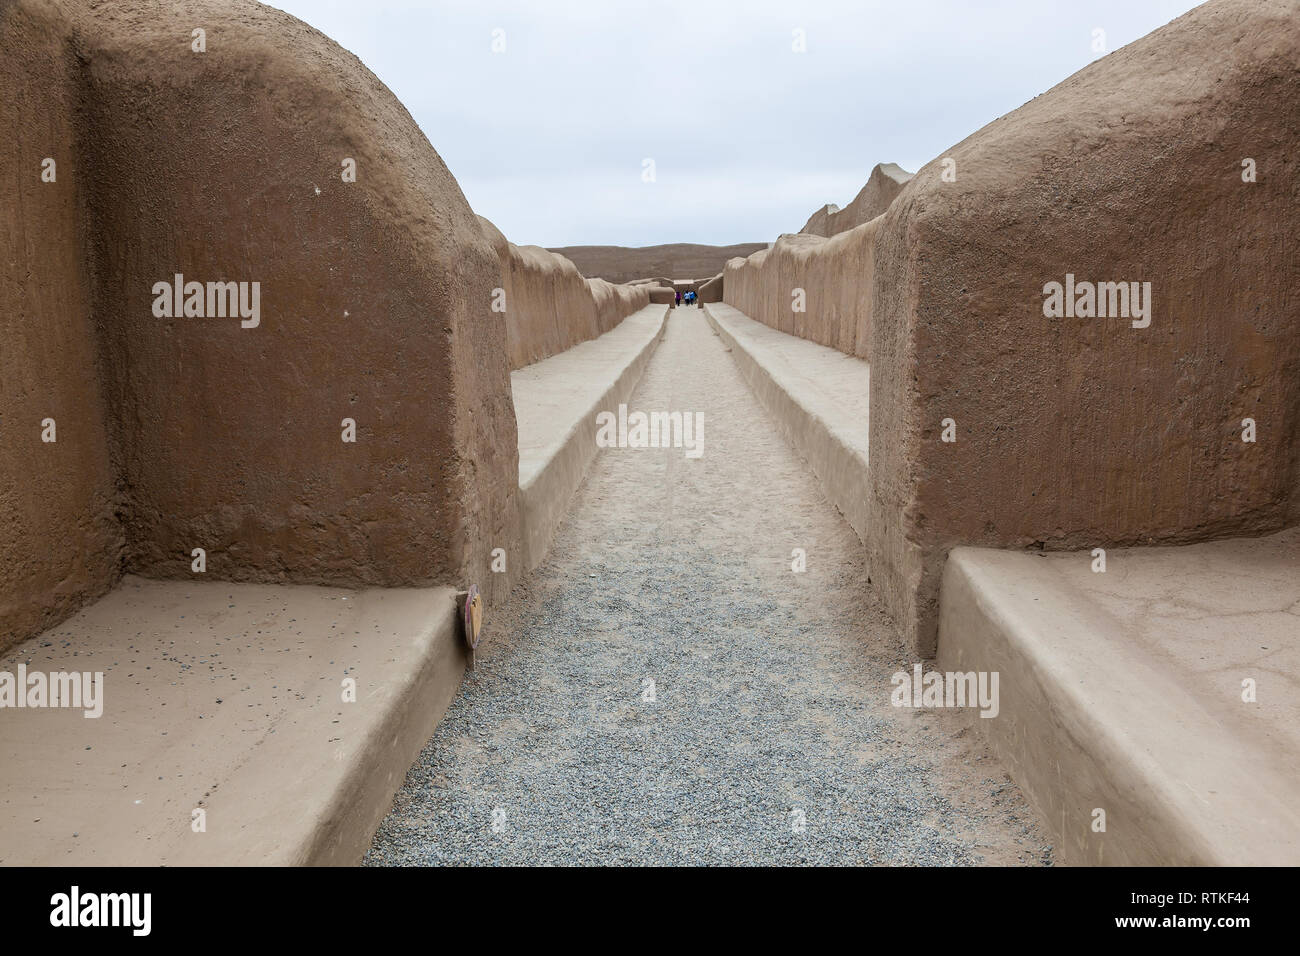 Inmensos muros de la ciudad de Chan Chan, capital del reino Chimú, visitados por turistas que caminan por senderos en su interior. Foto de stock